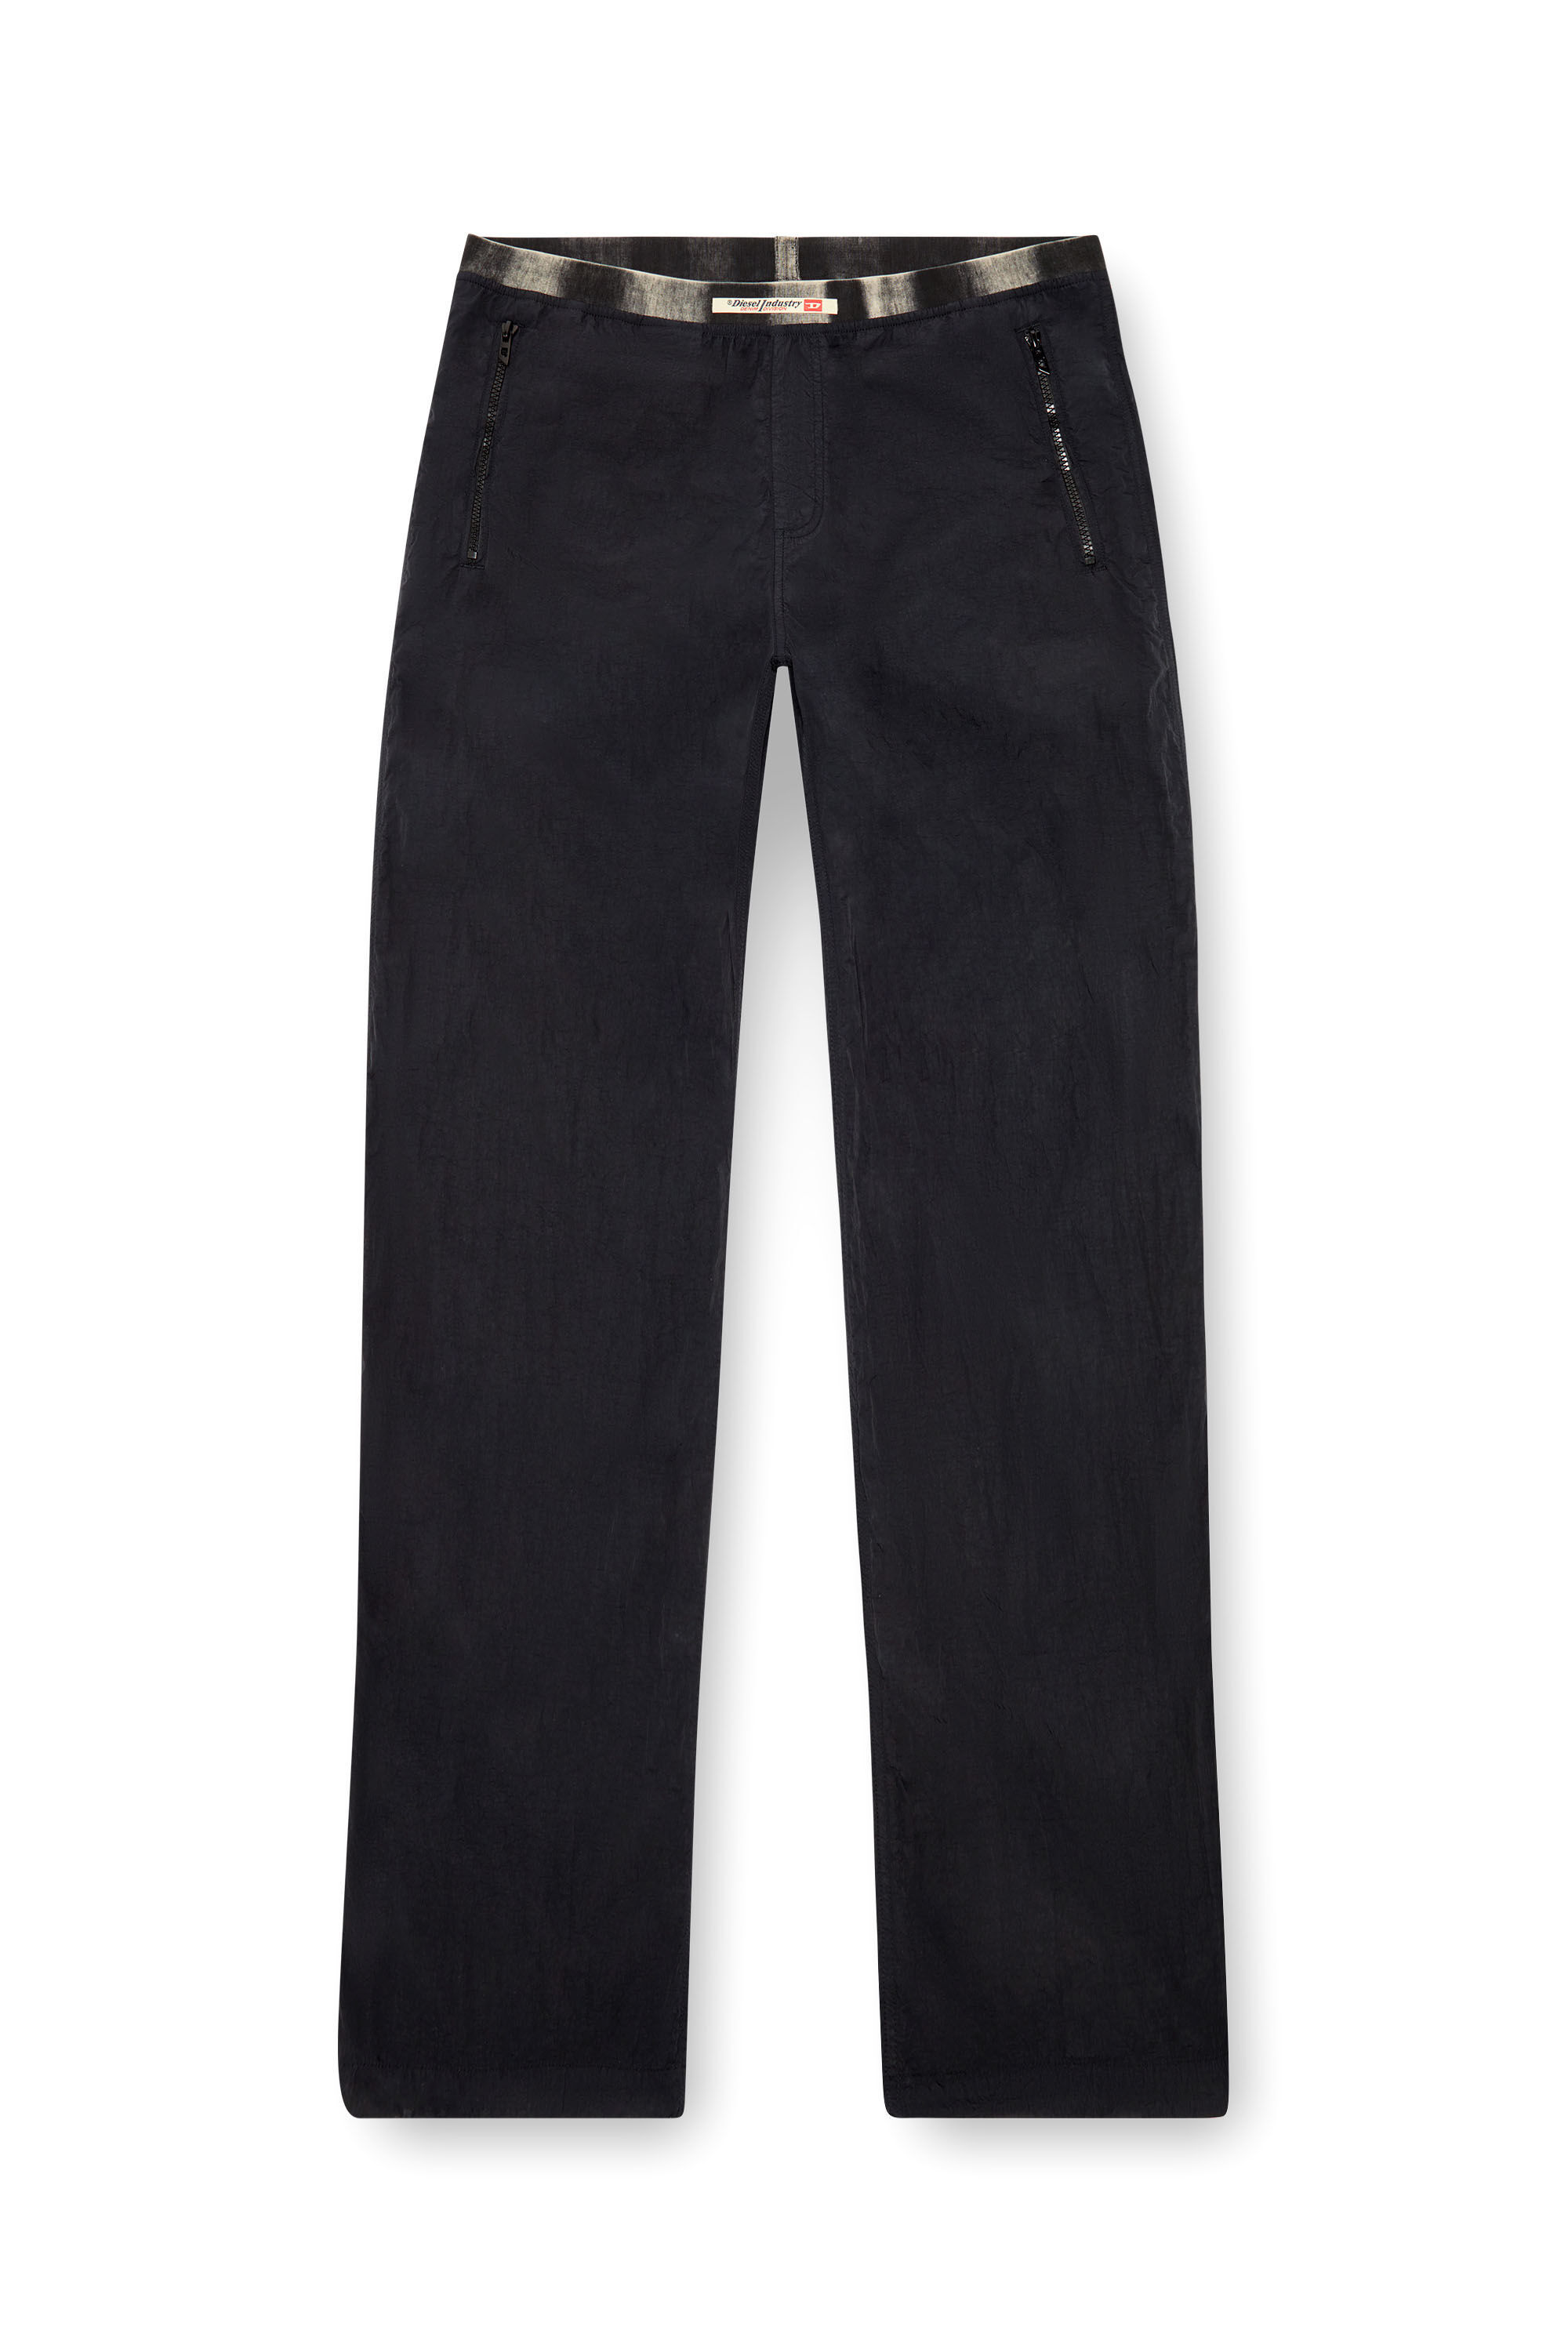 Diesel - P-POST, Hombre Pantalones ligeros de nailon arrugado in Negro - Image 2